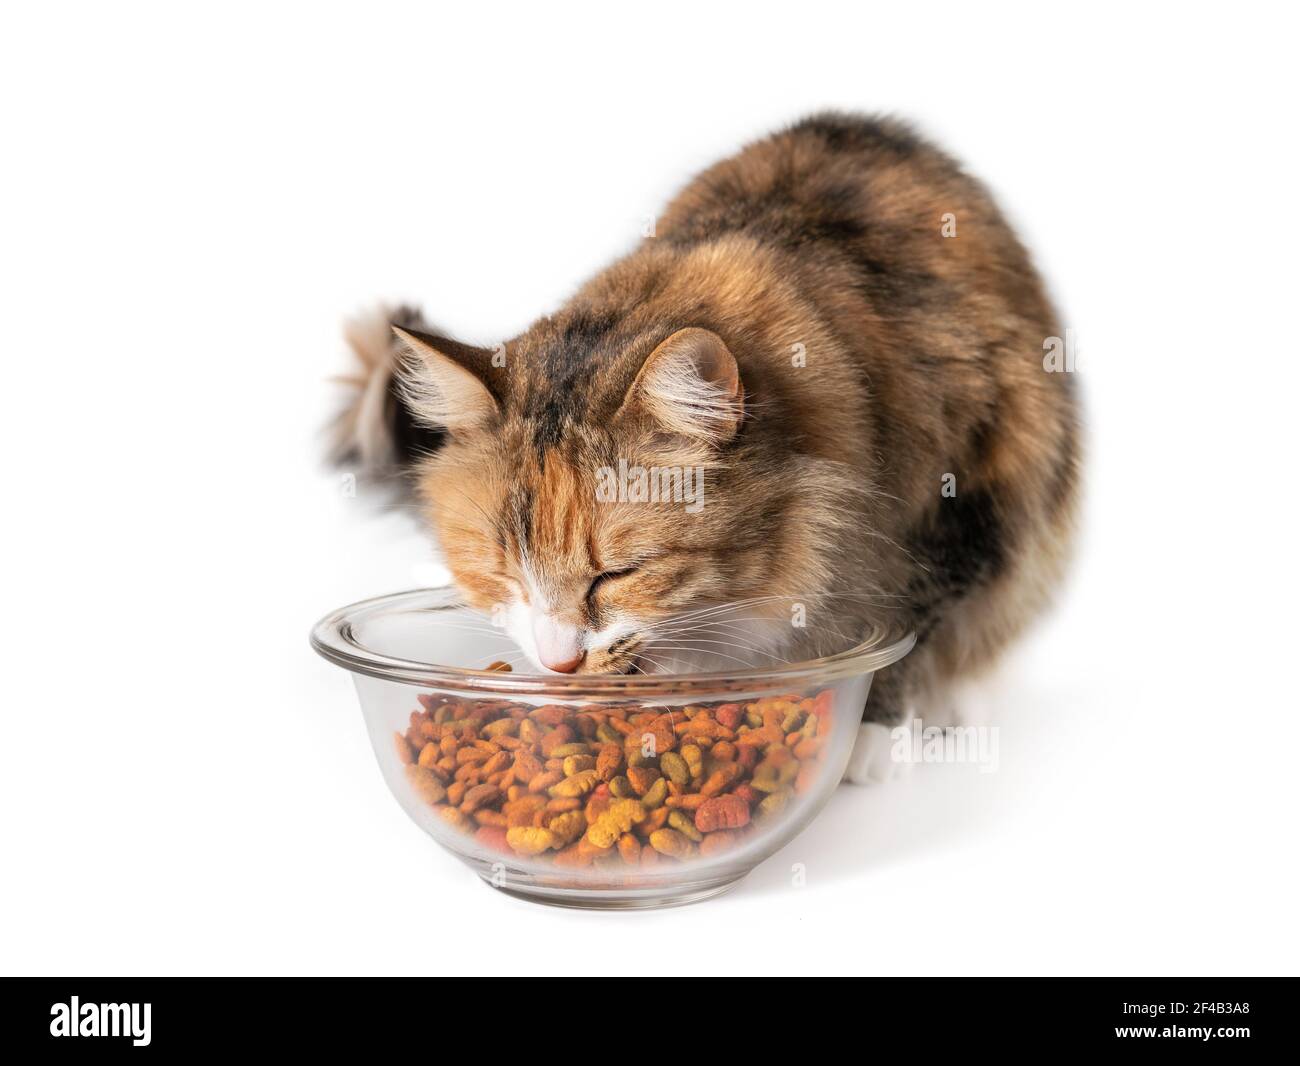 Katze essen Kibbles aus einer Schüssel. Cute Kitty knabbern auf große Menge an trockenem Tierfutter in Glasschale. Konzept für überfüttern oder überfressen Katzen und Hunde. Stockfoto